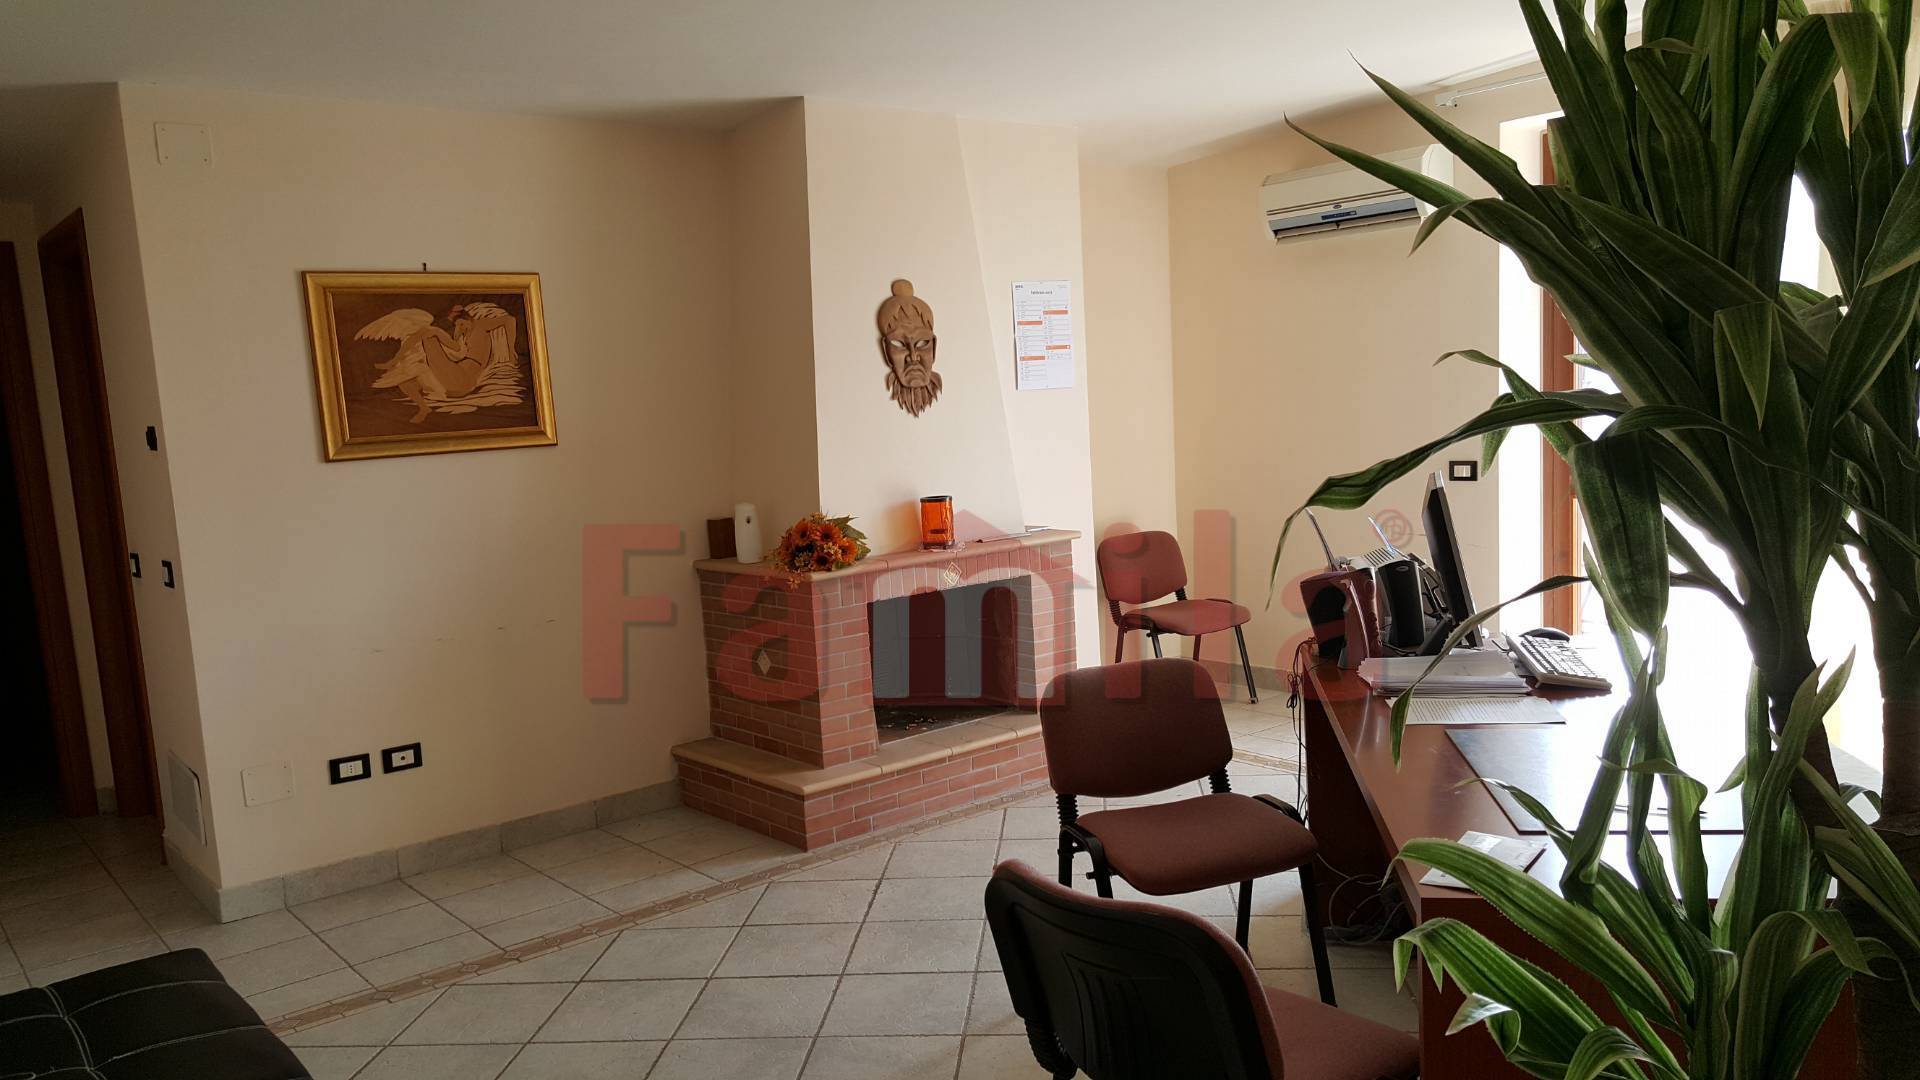 Appartamento in vendita a Sirignano, 3 locali, prezzo € 100.000 | CambioCasa.it